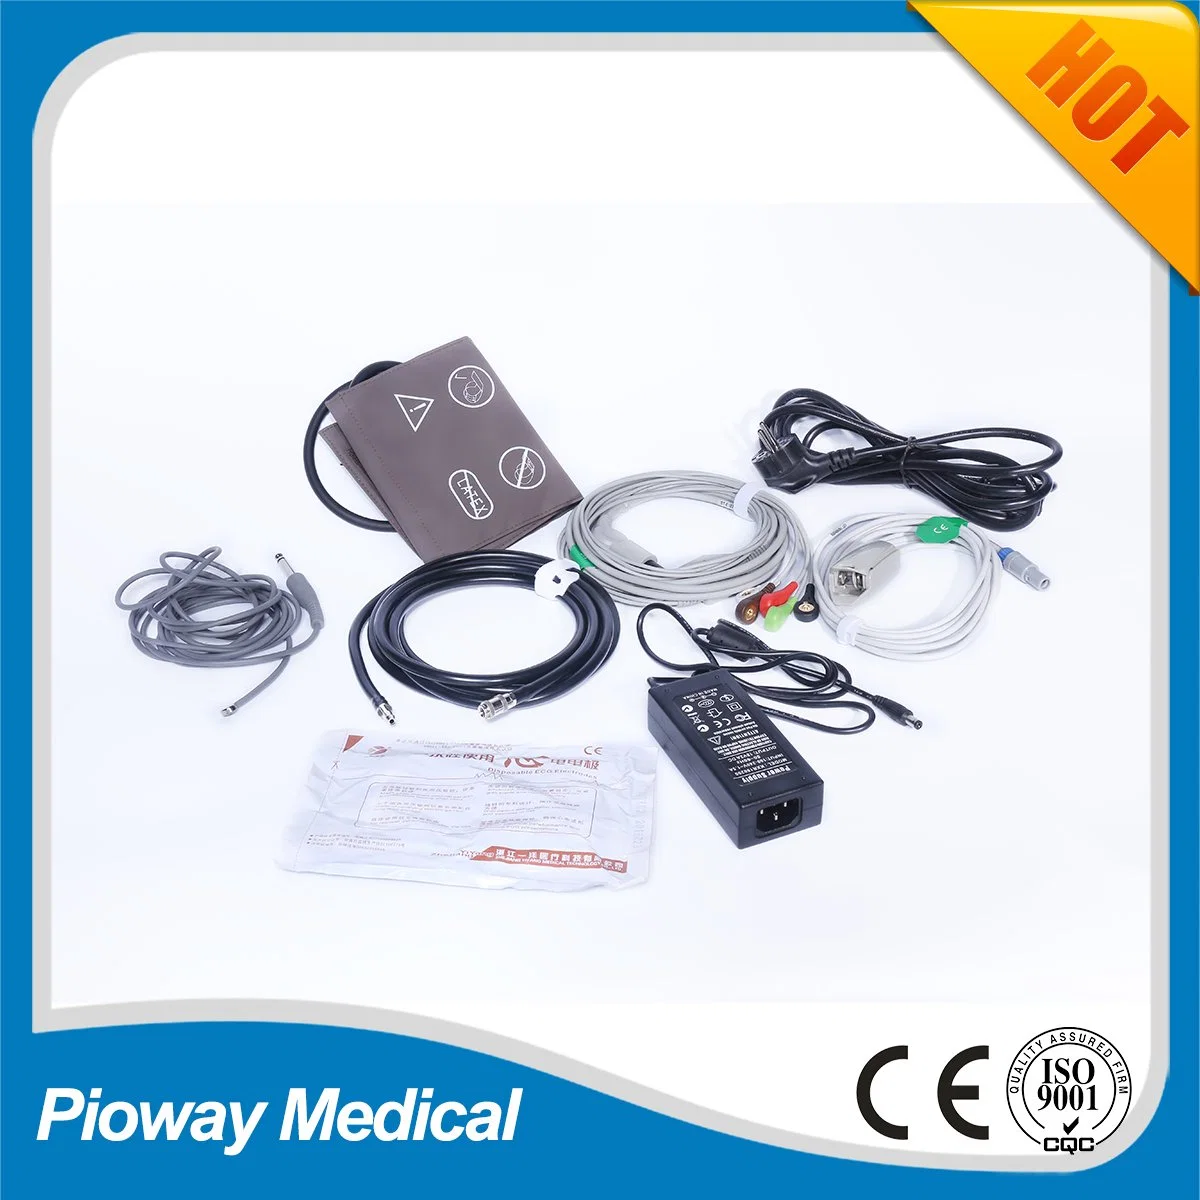 Прикроватный монитор пациента для ОРИТ, монитор основных параметров жизнедеятельности (PW-405)